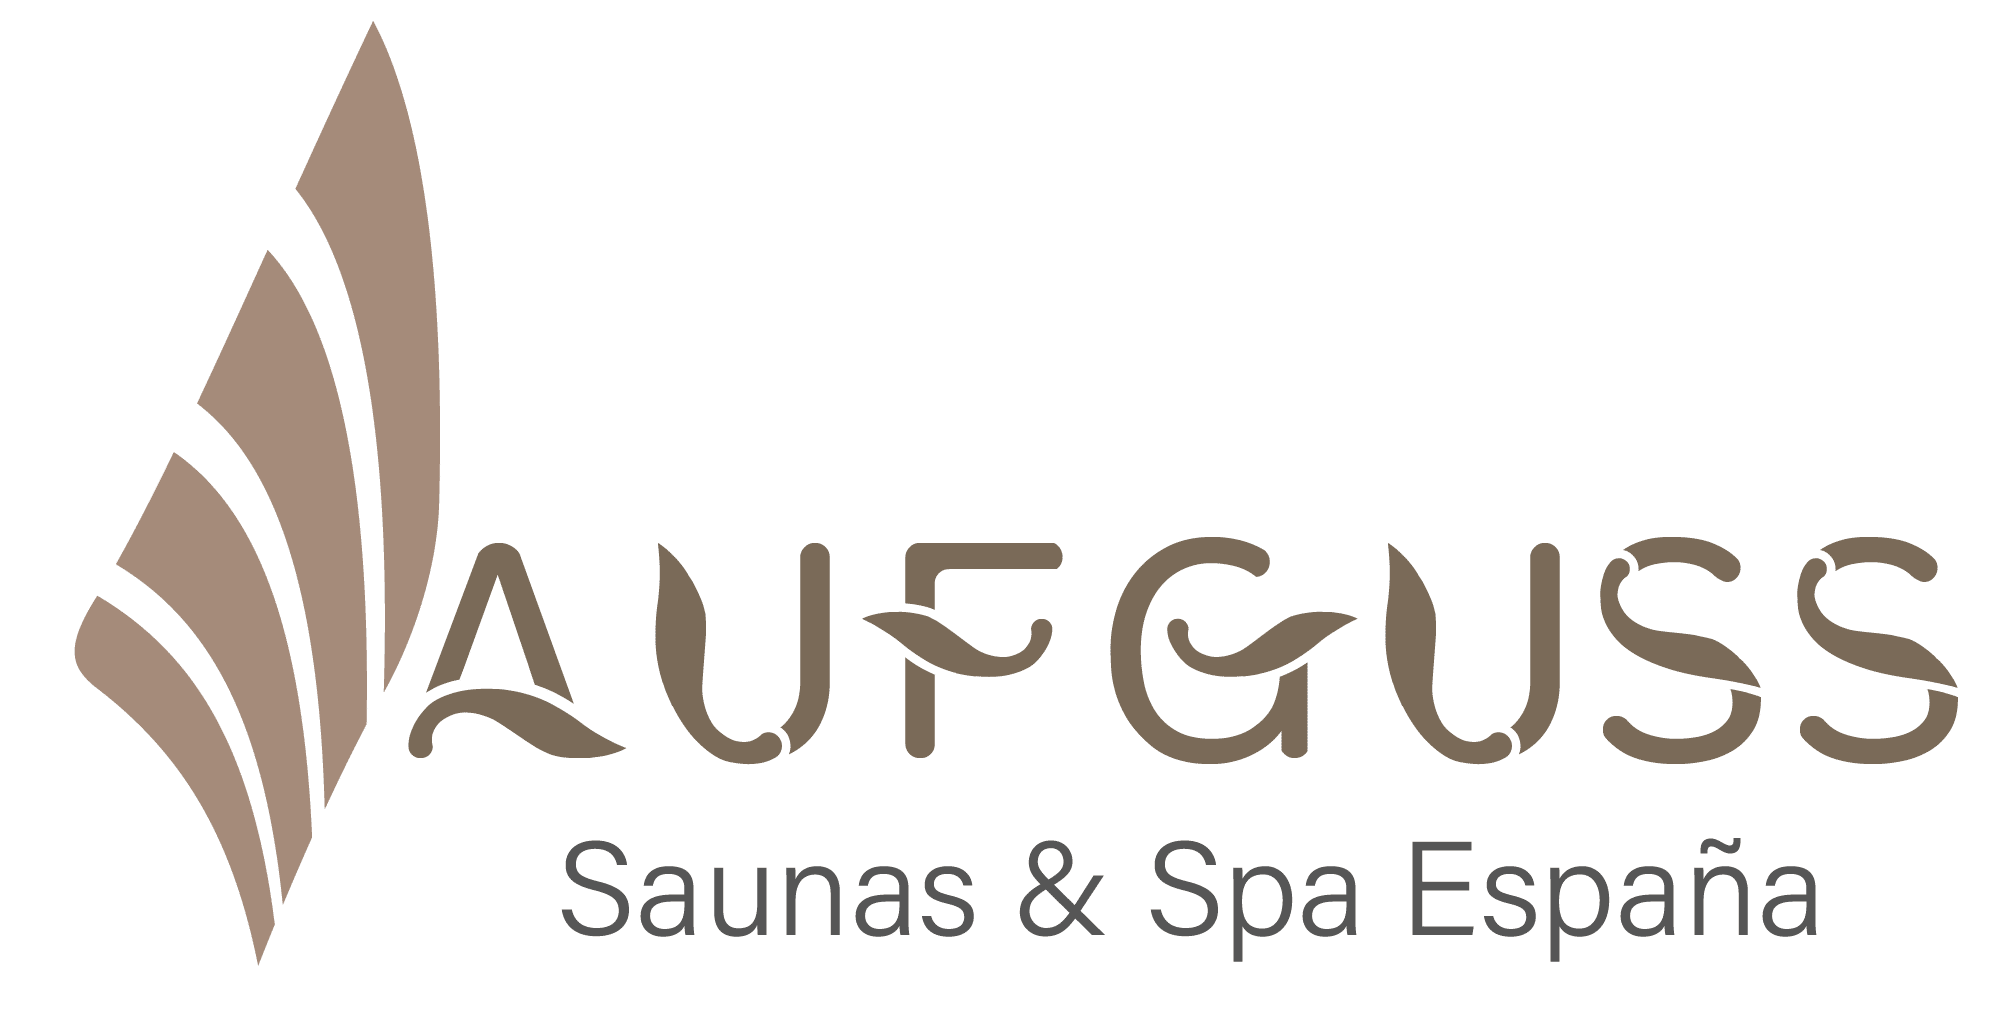 El logotipo de aufguss sun and spa espirito enfatiza el bienestar y el fitness.